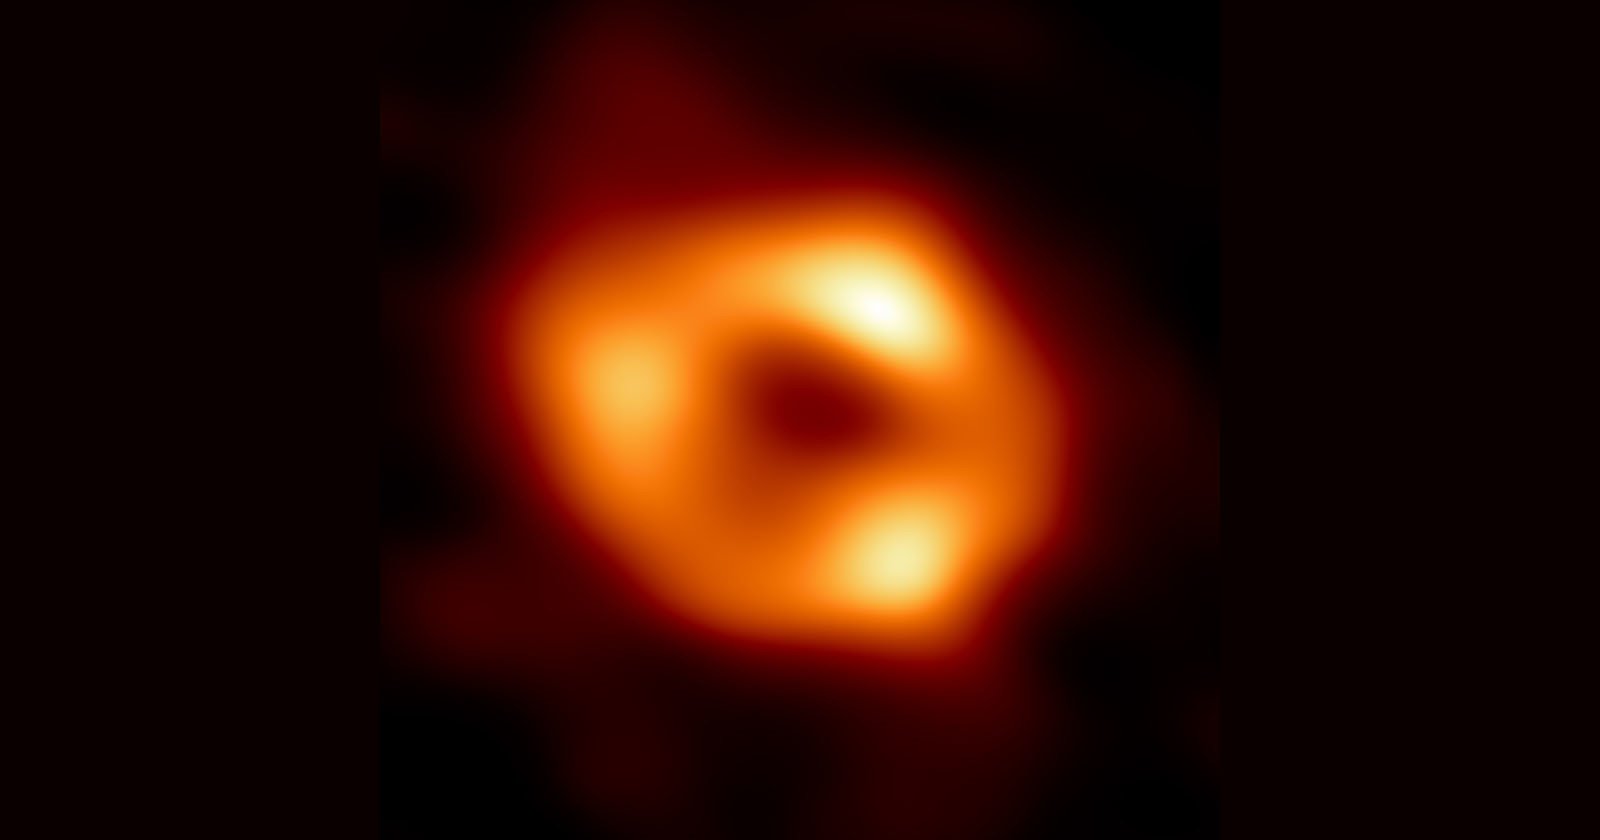  center hole black image 